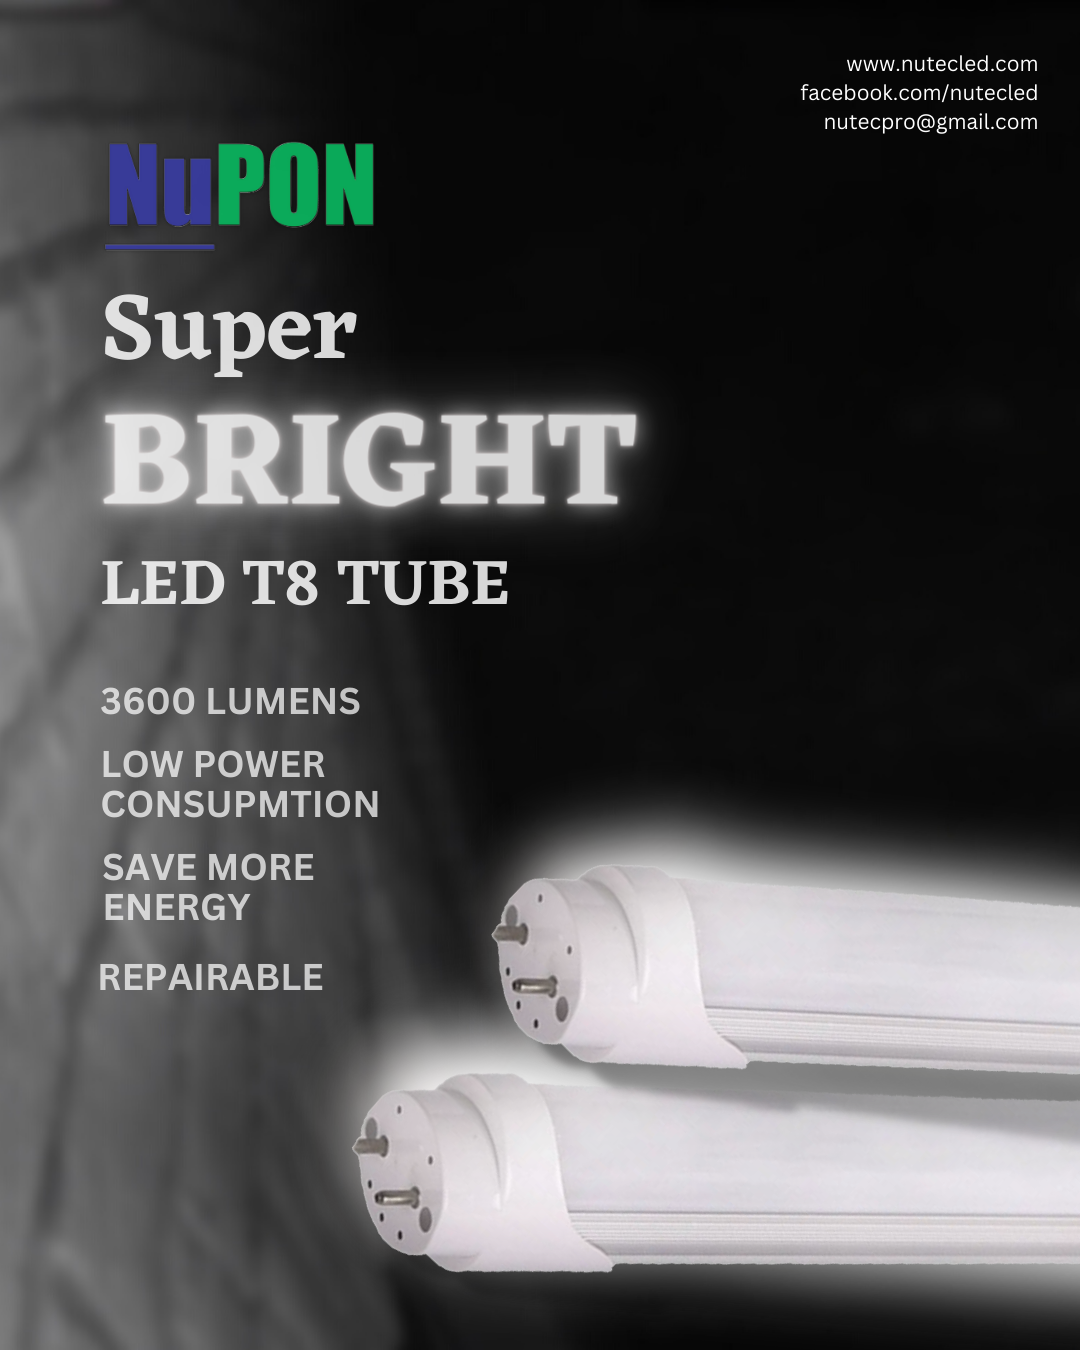 SuperBRIGHT LED T8 Tube